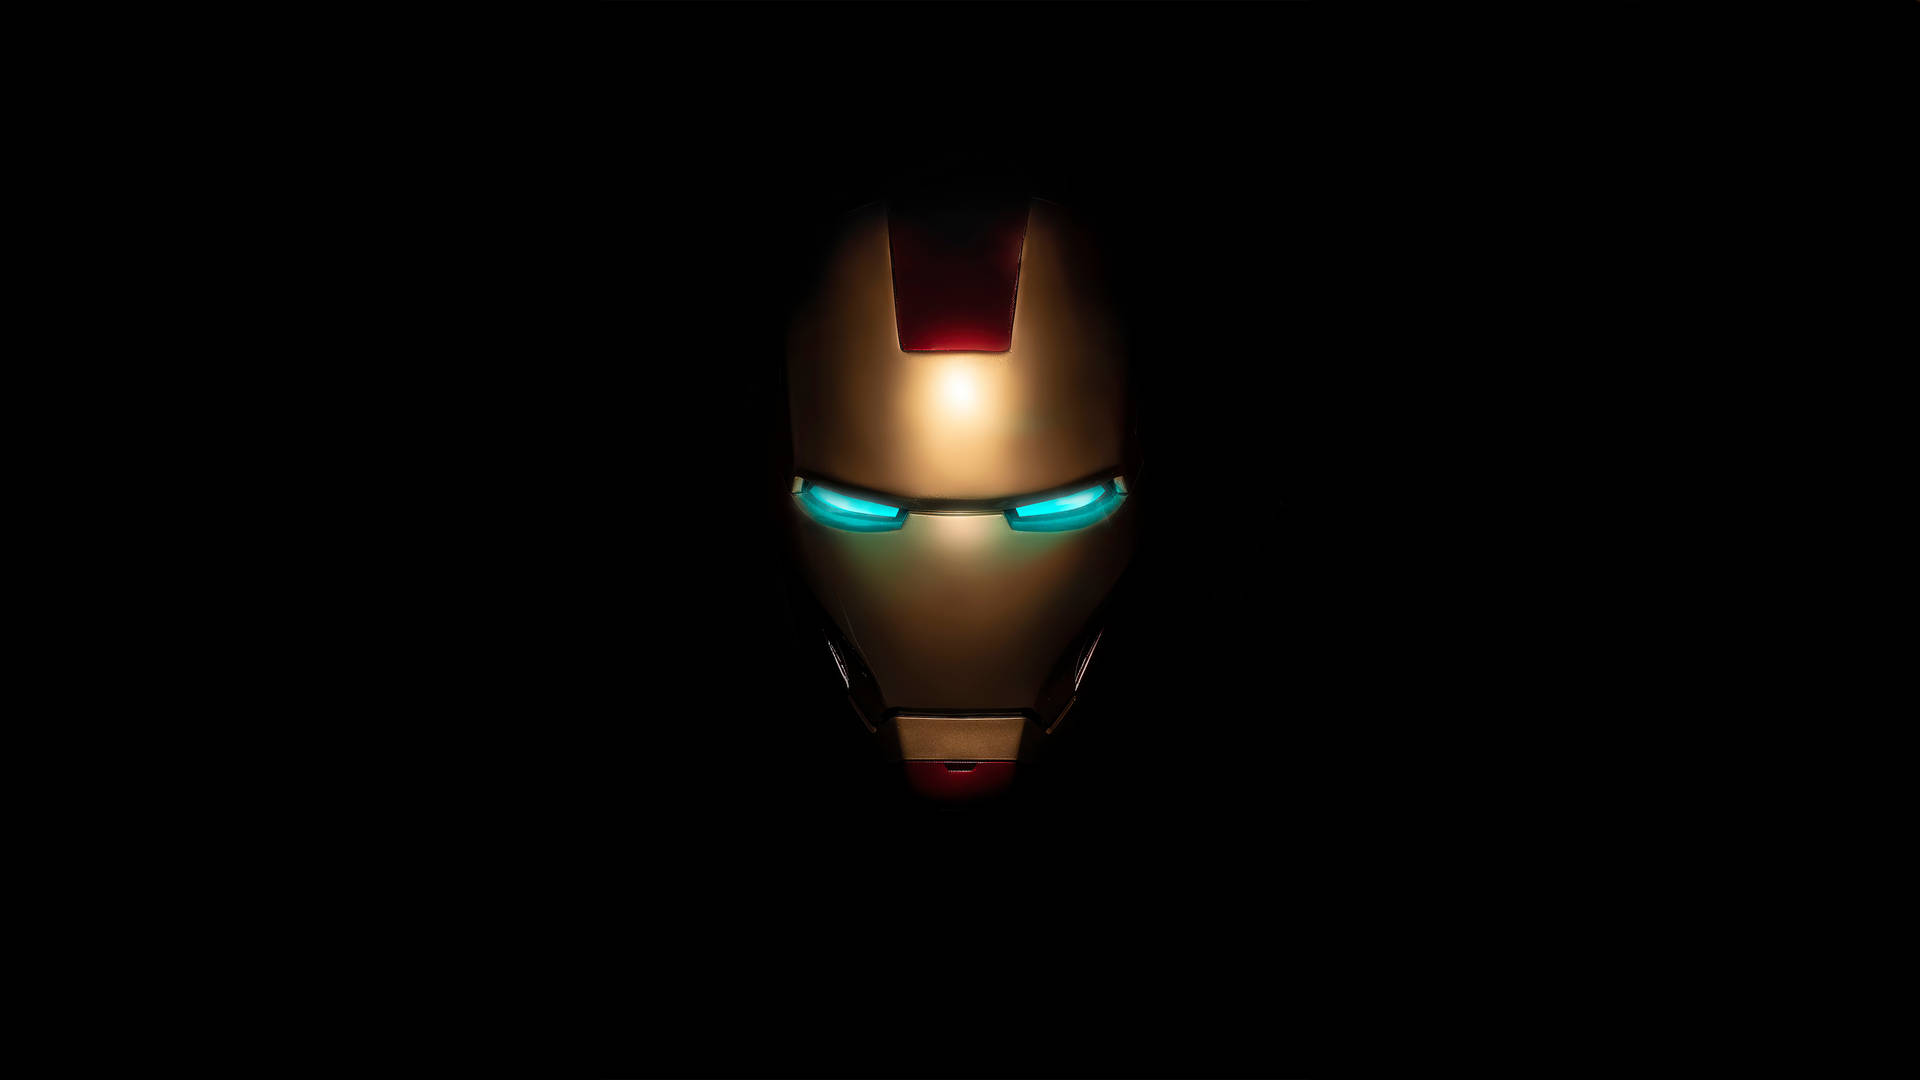 Iron Man Mask Logo On Black Background